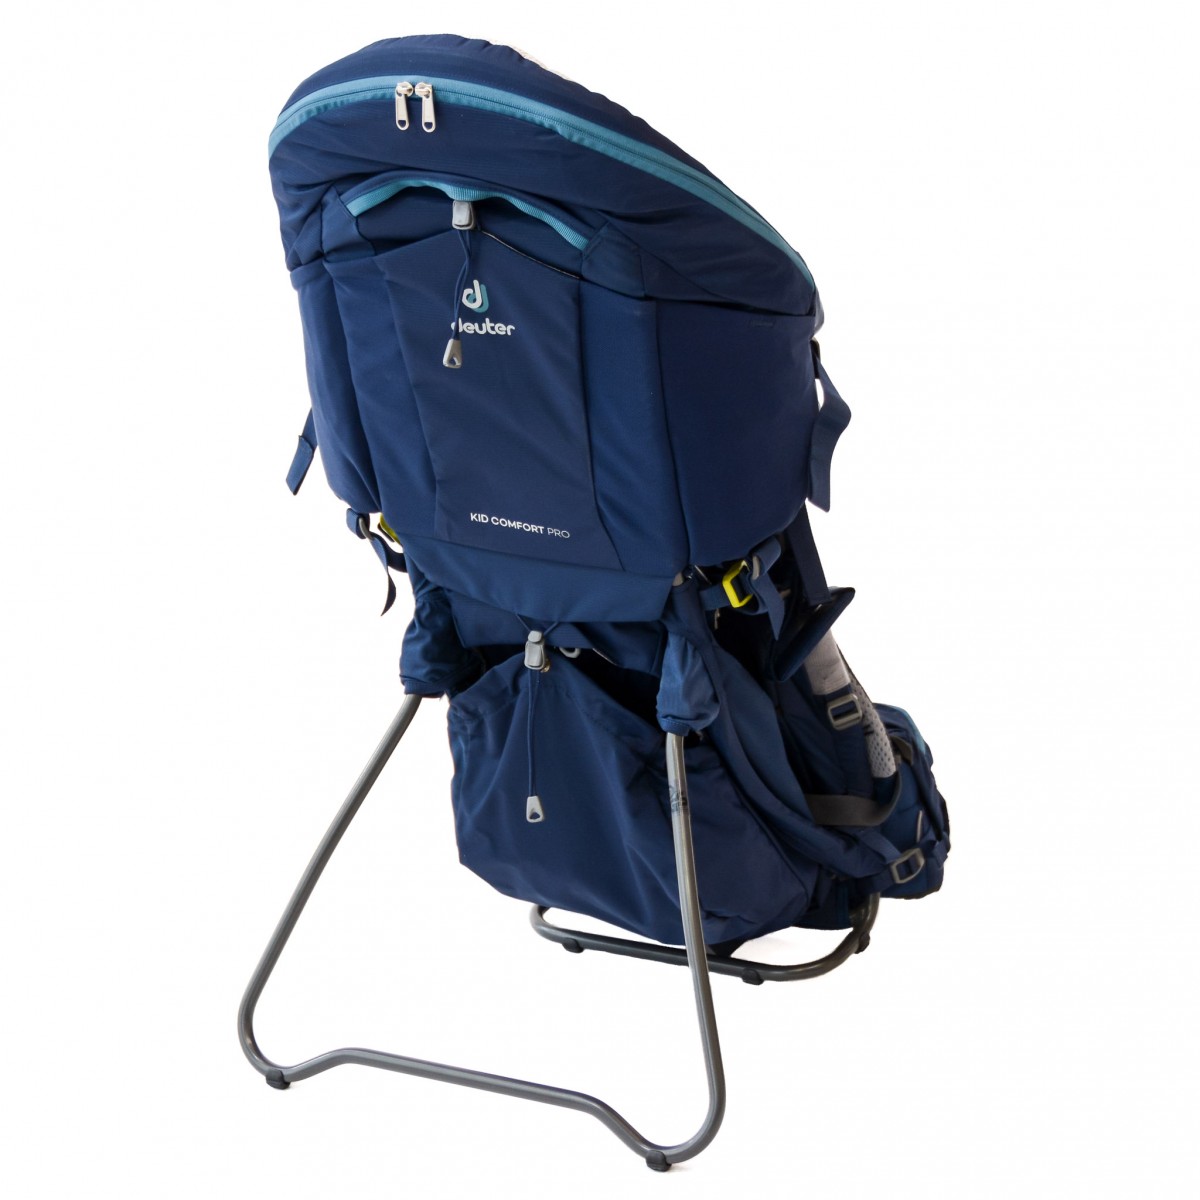 deuter kid comfort pro baby backpack review